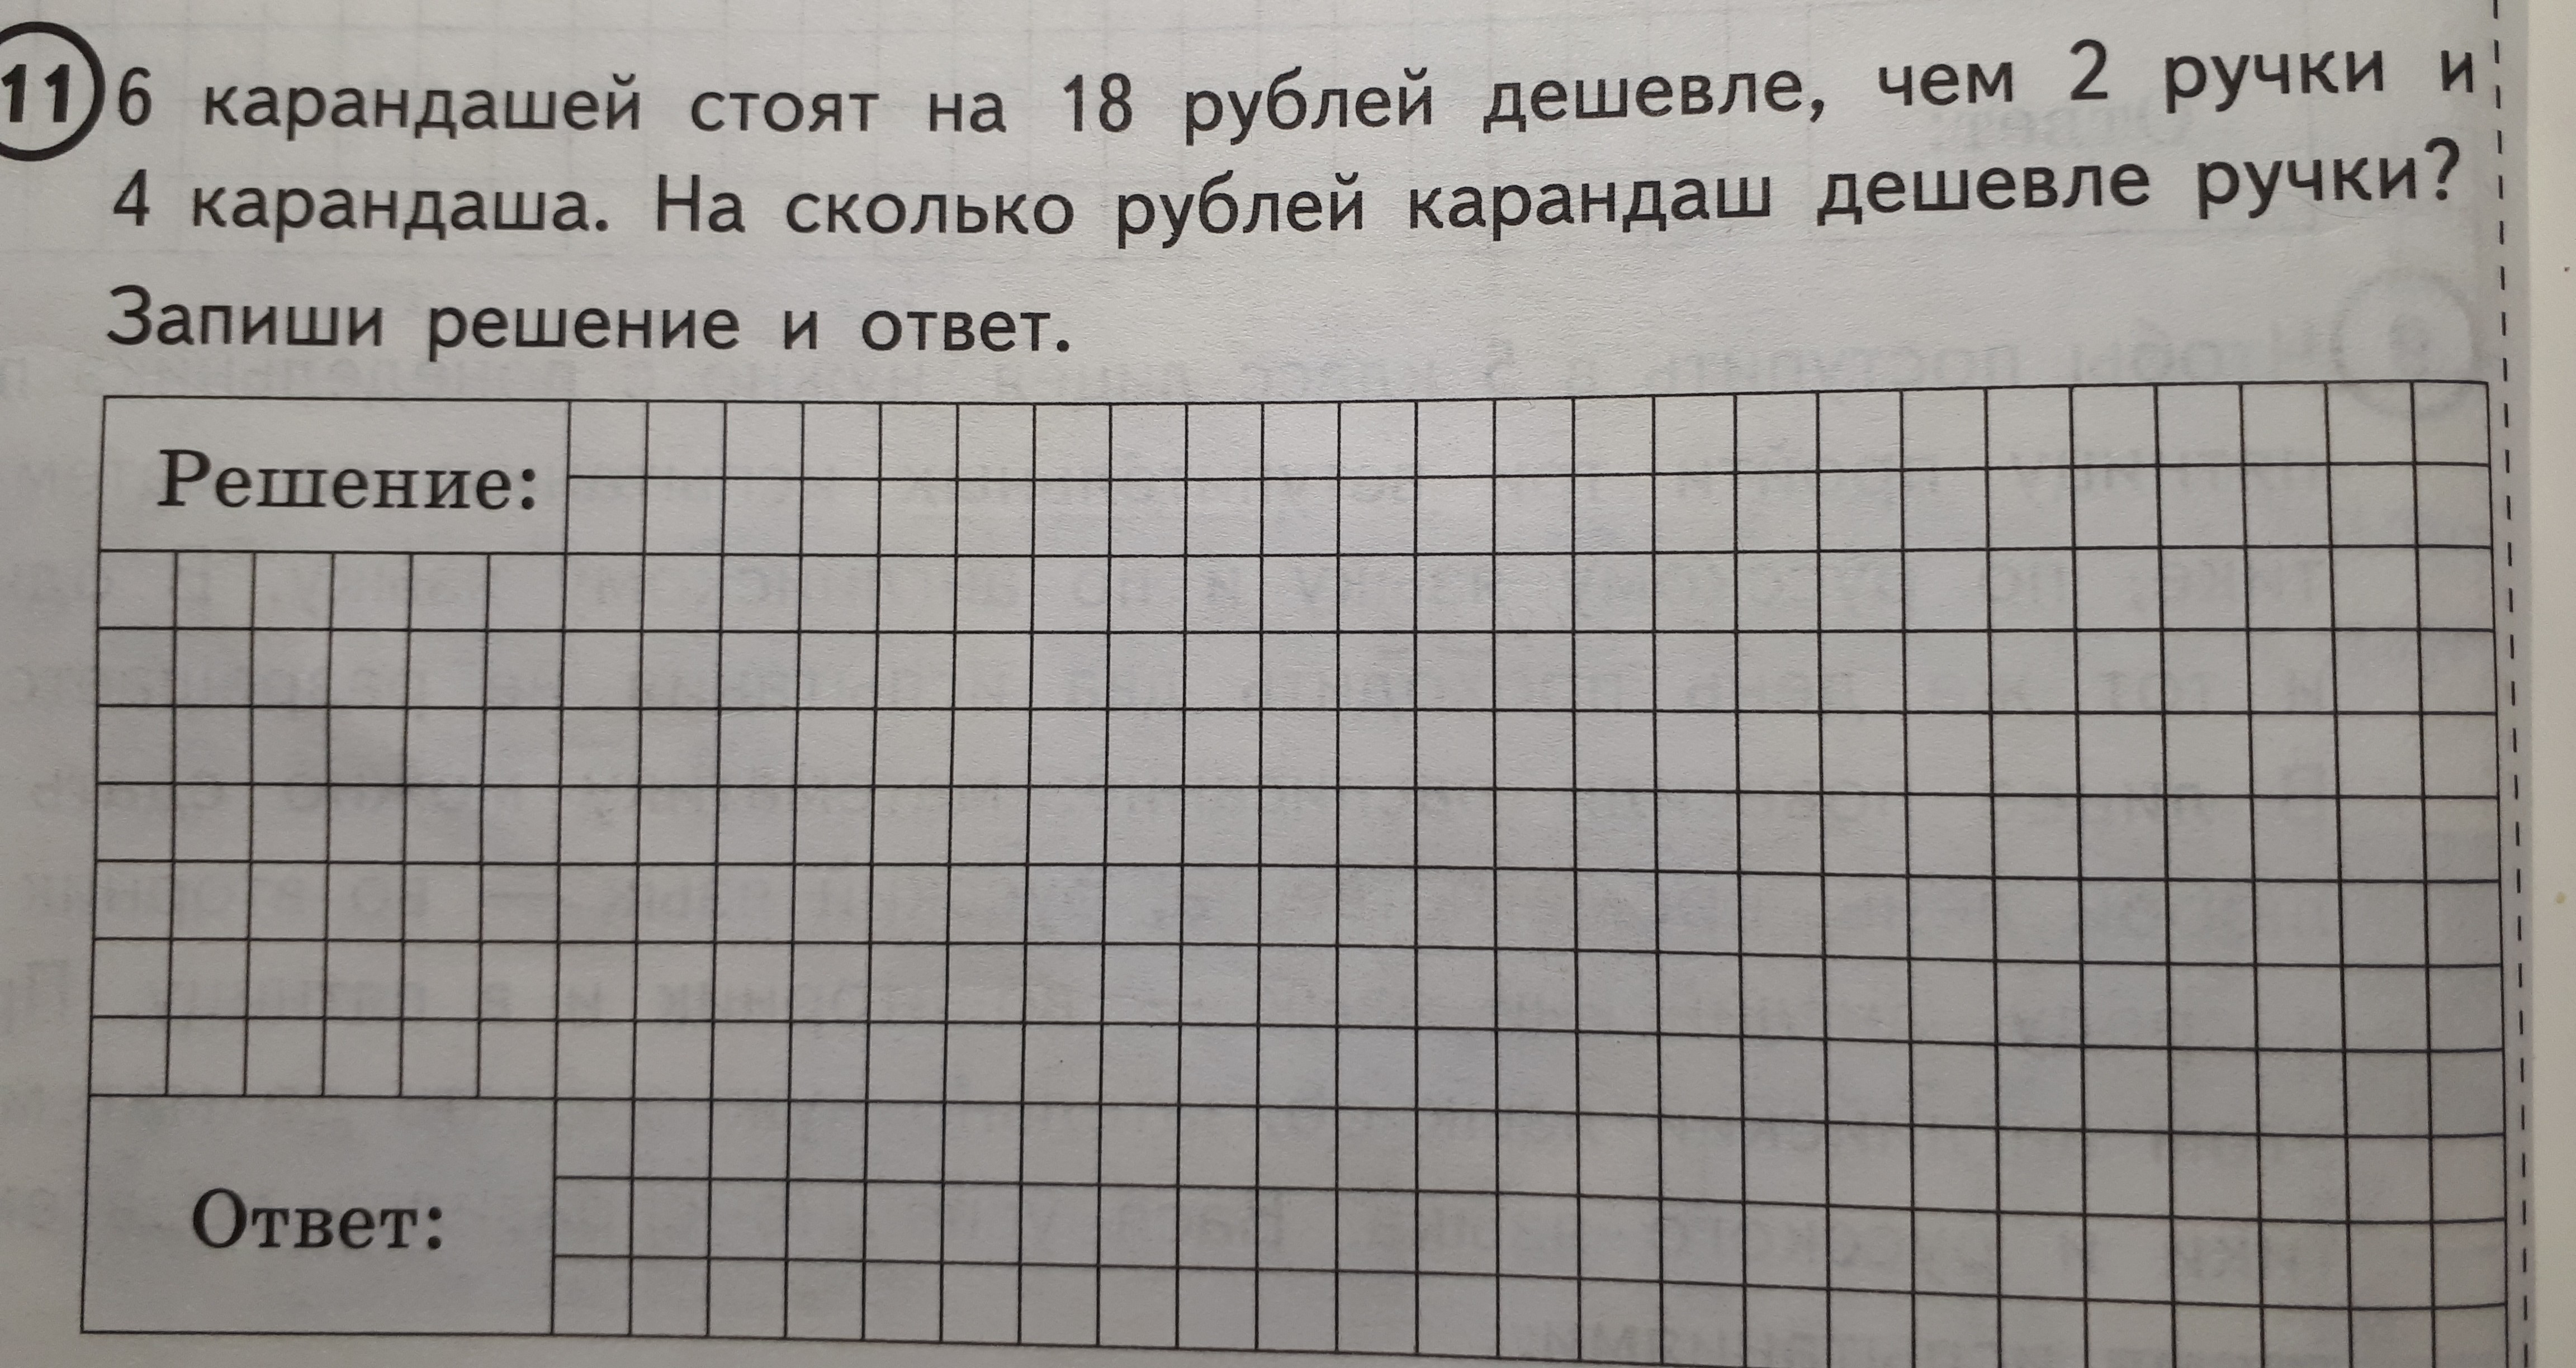 Карандаш и ручка вместе стоят 8 рублей. 6 Карандашей стоят. 6 Карандашей стоят на 18 рублей. Задача про карандаши. Решение задачи с карандашами.